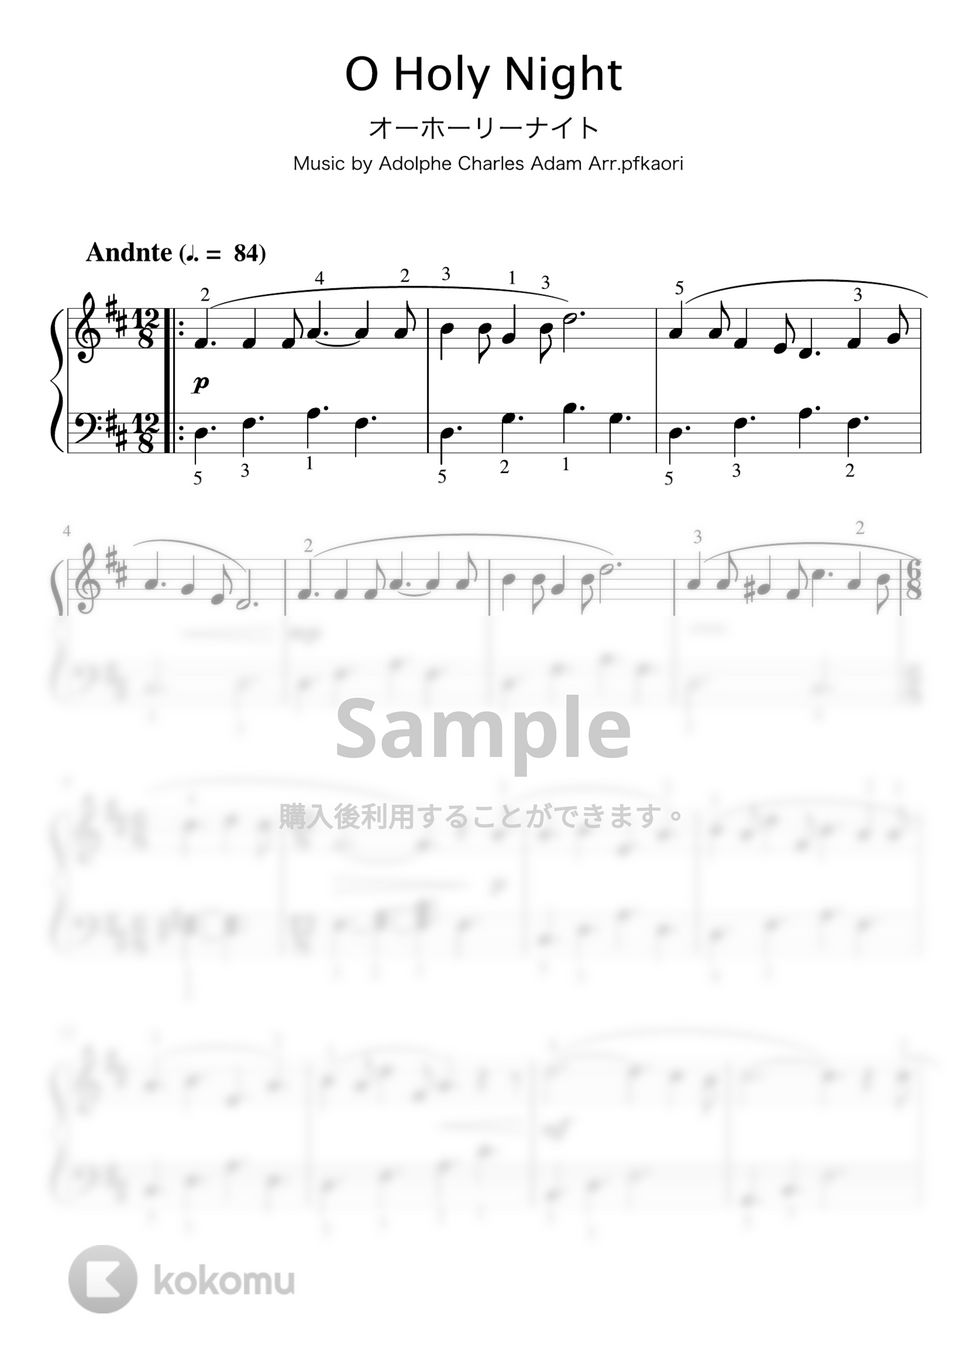 アドルフシャルルアダン - オーホーリーナイト (Ddur・ピアノソロ初級・指番号付き) by pfkaori